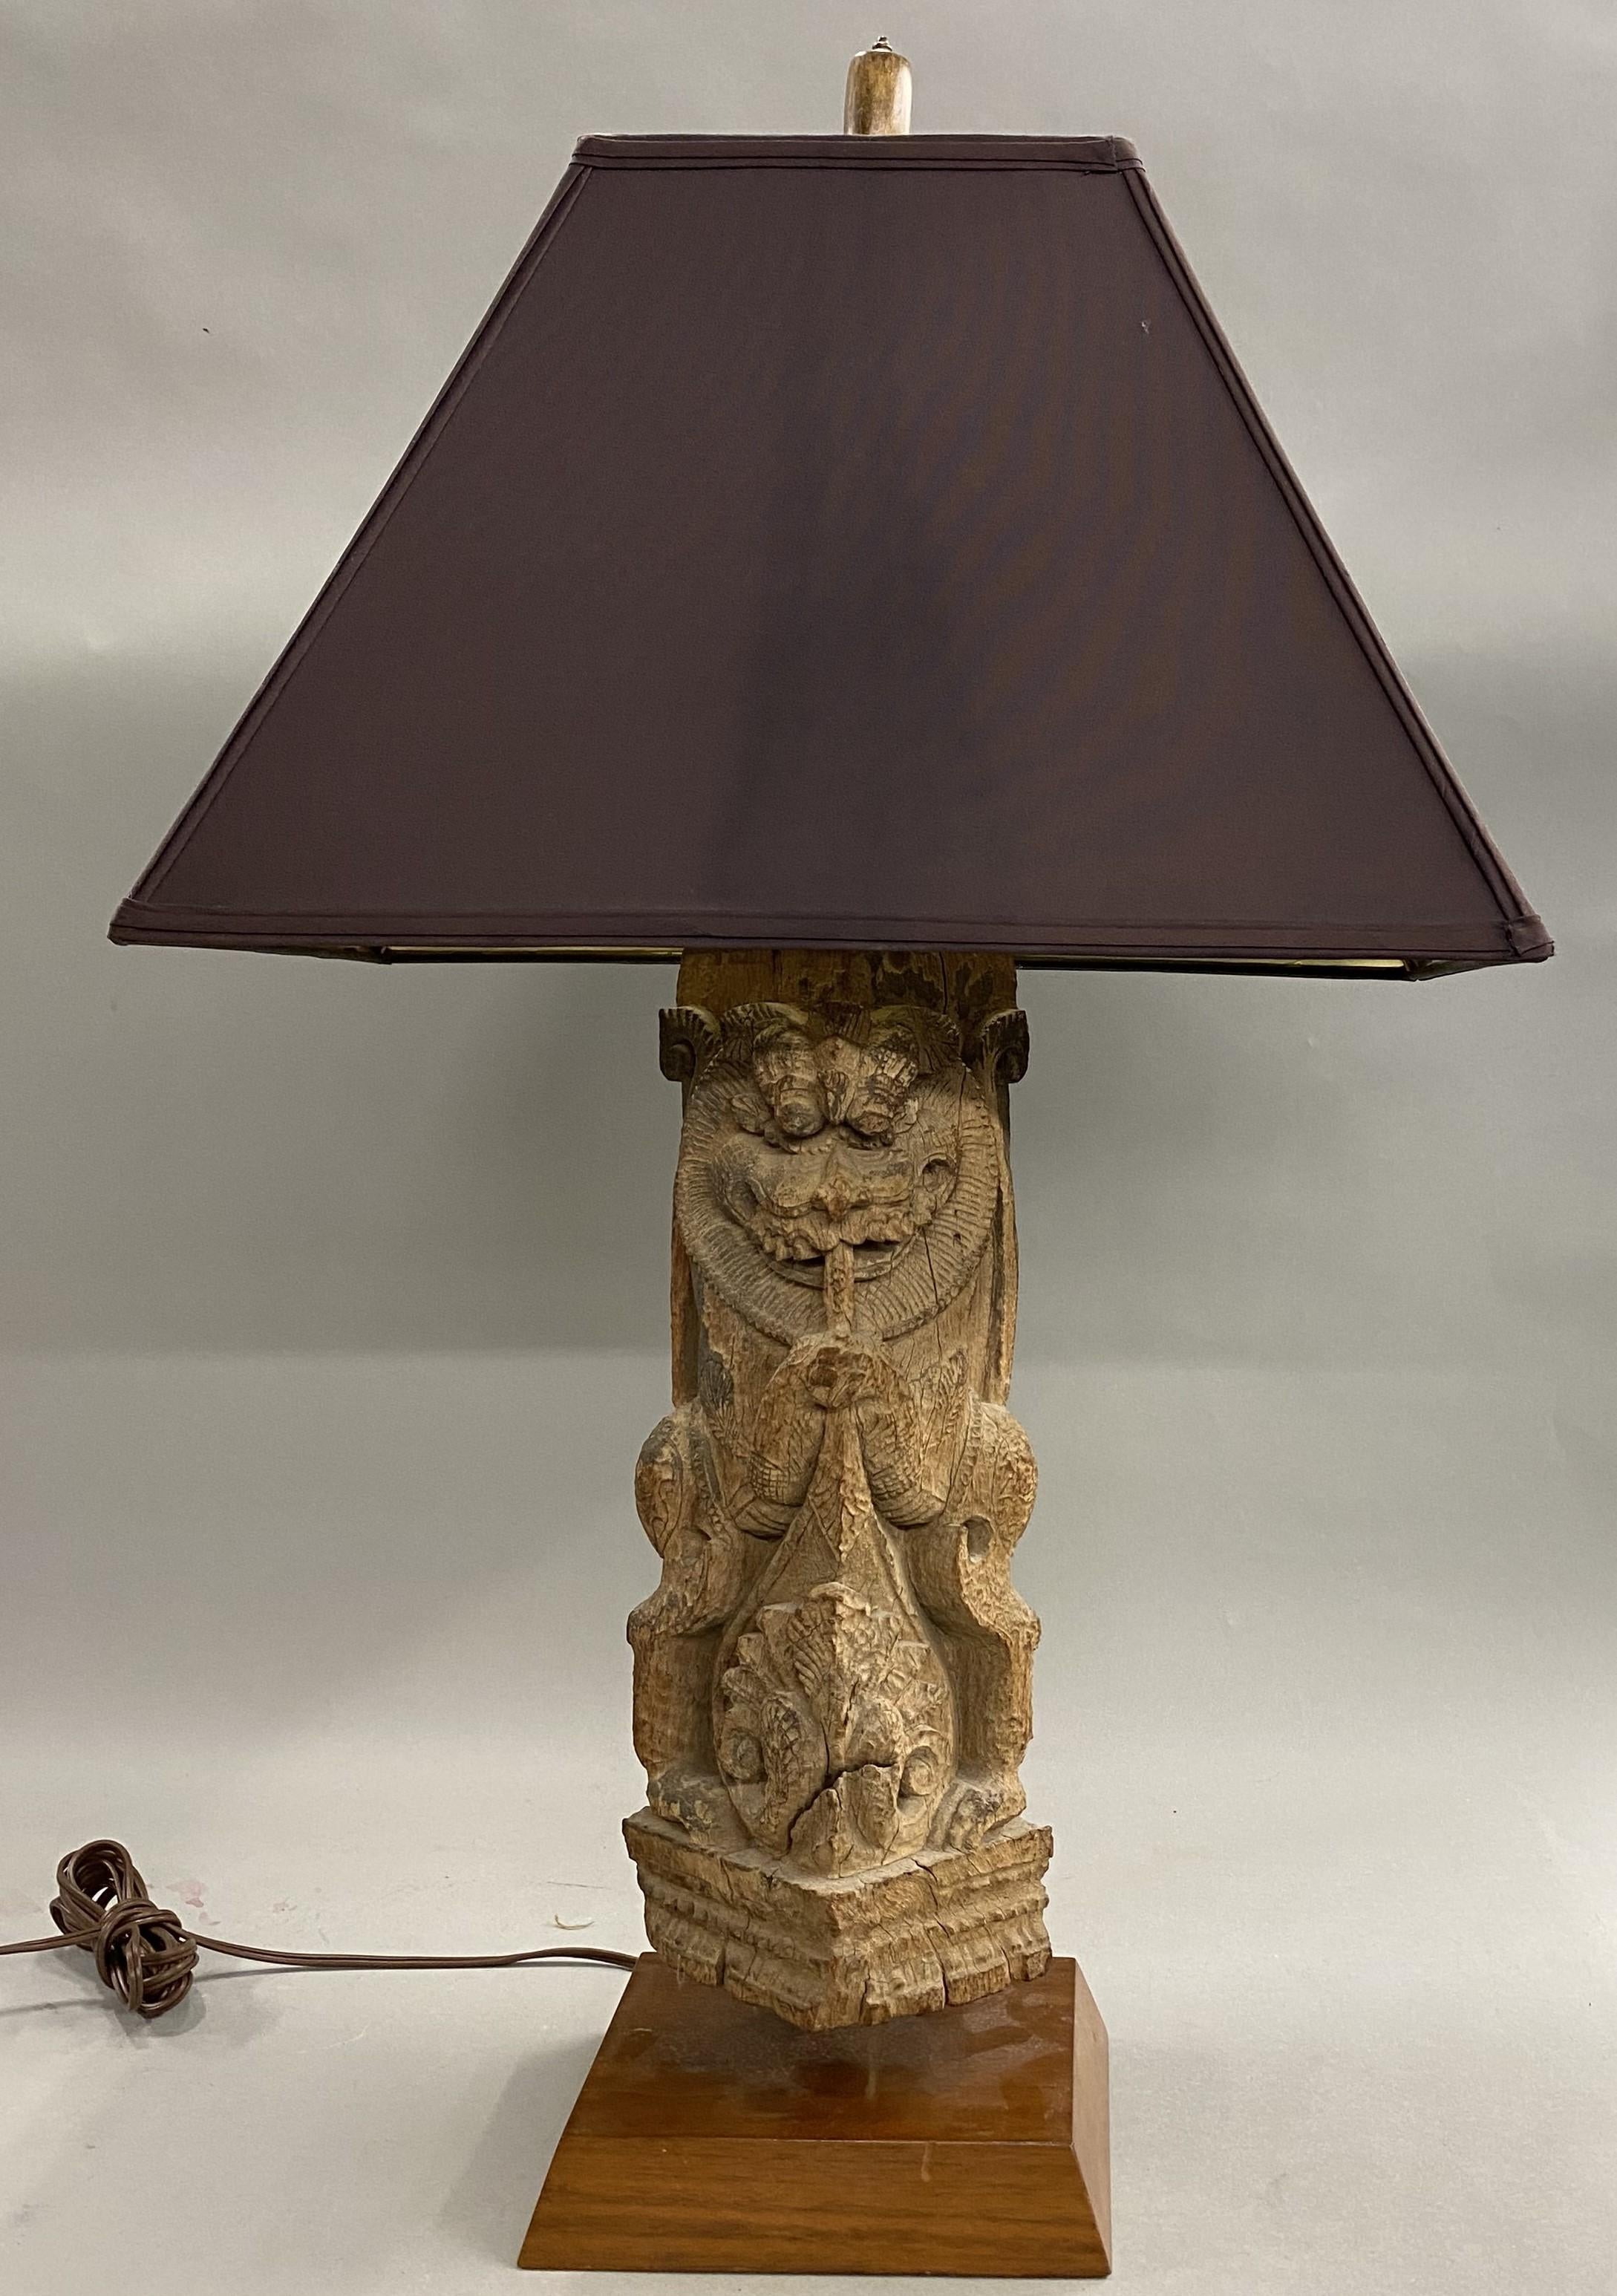 Fragment architectural décoratif en bois sculpté asiatique du XIXe siècle, représentant une figure de dragon cornu, transformé en lampe de table avec un abat-jour rectangulaire marron. La lampe est en bon état de fonctionnement, avec des